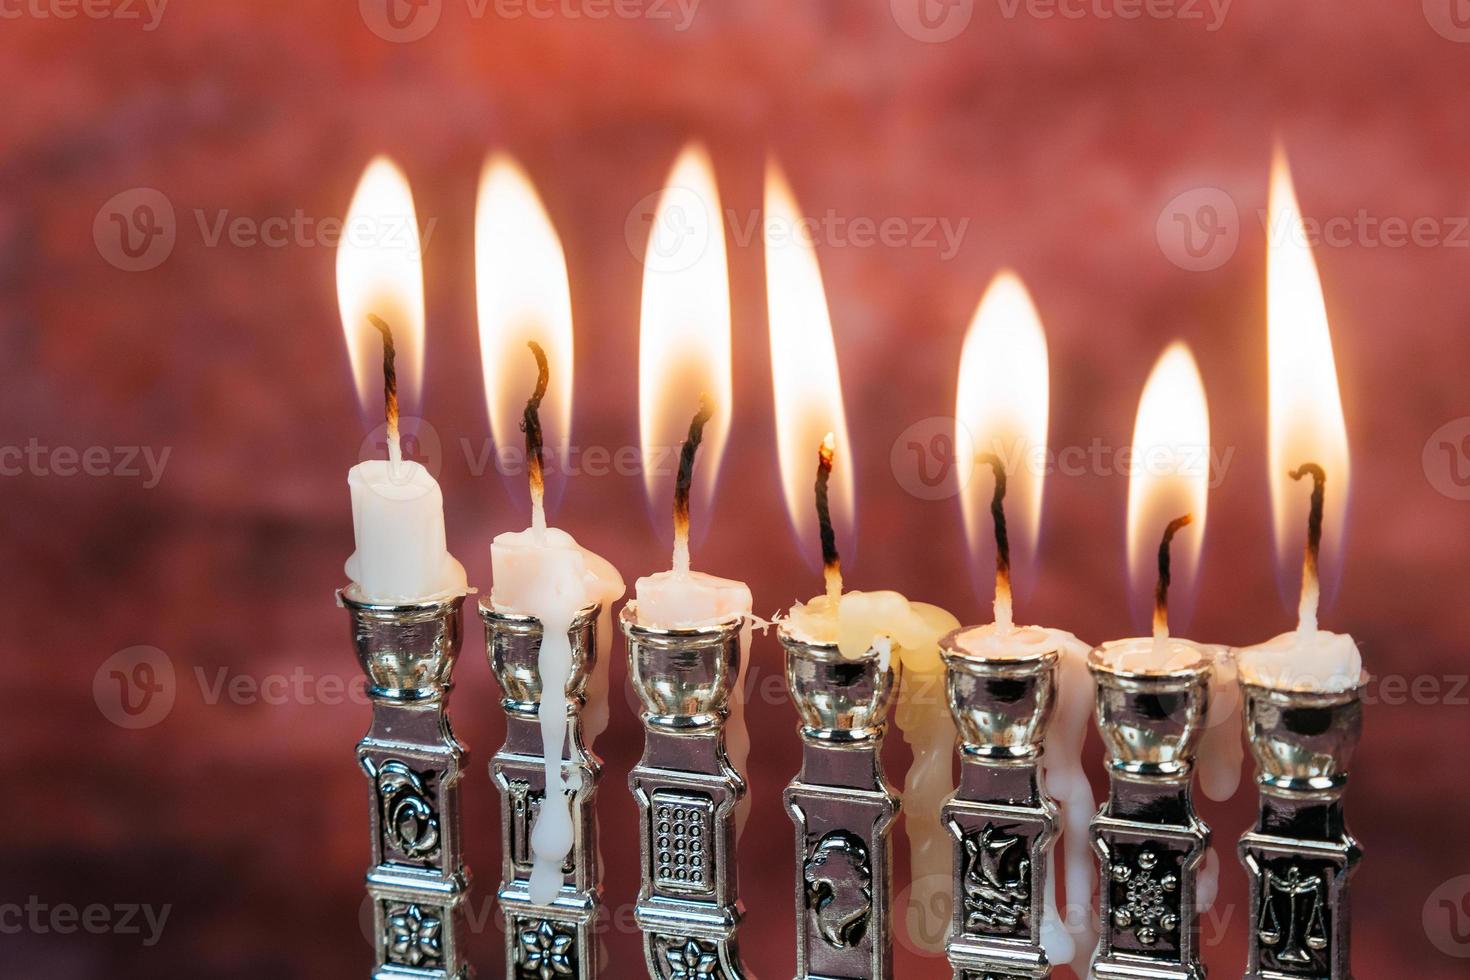 image de fond de hanukkah fête juive avec menorah traditionnelle photo